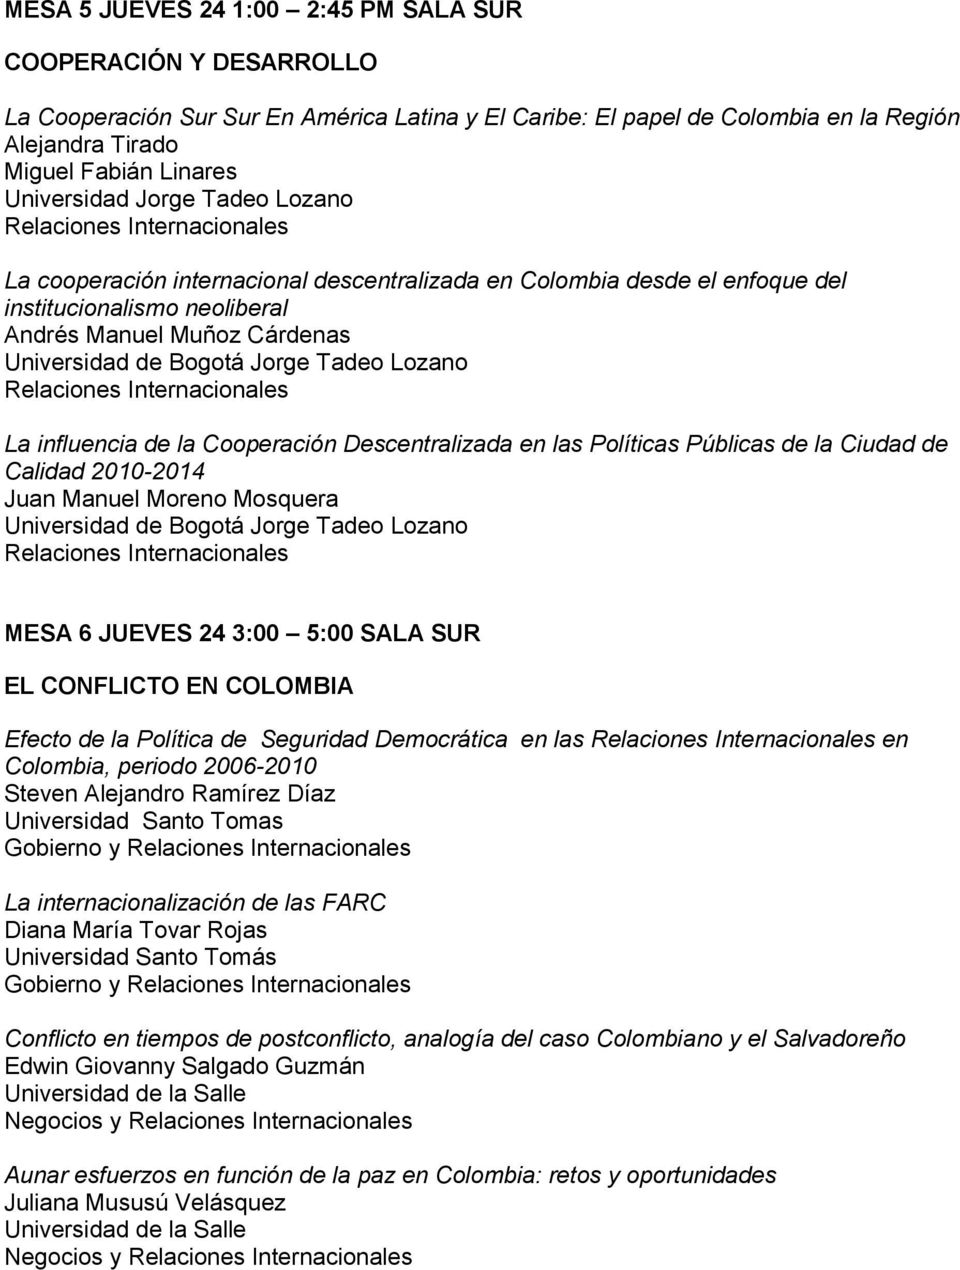 Públicas de la Ciudad de Calidad 2010-2014 Juan Manuel Moreno Mosquera MESA 6 JUEVES 24 3:00 5:00 SALA SUR EL CONFLICTO EN COLOMBIA Efecto de la Política de Seguridad Democrática en las en Colombia,